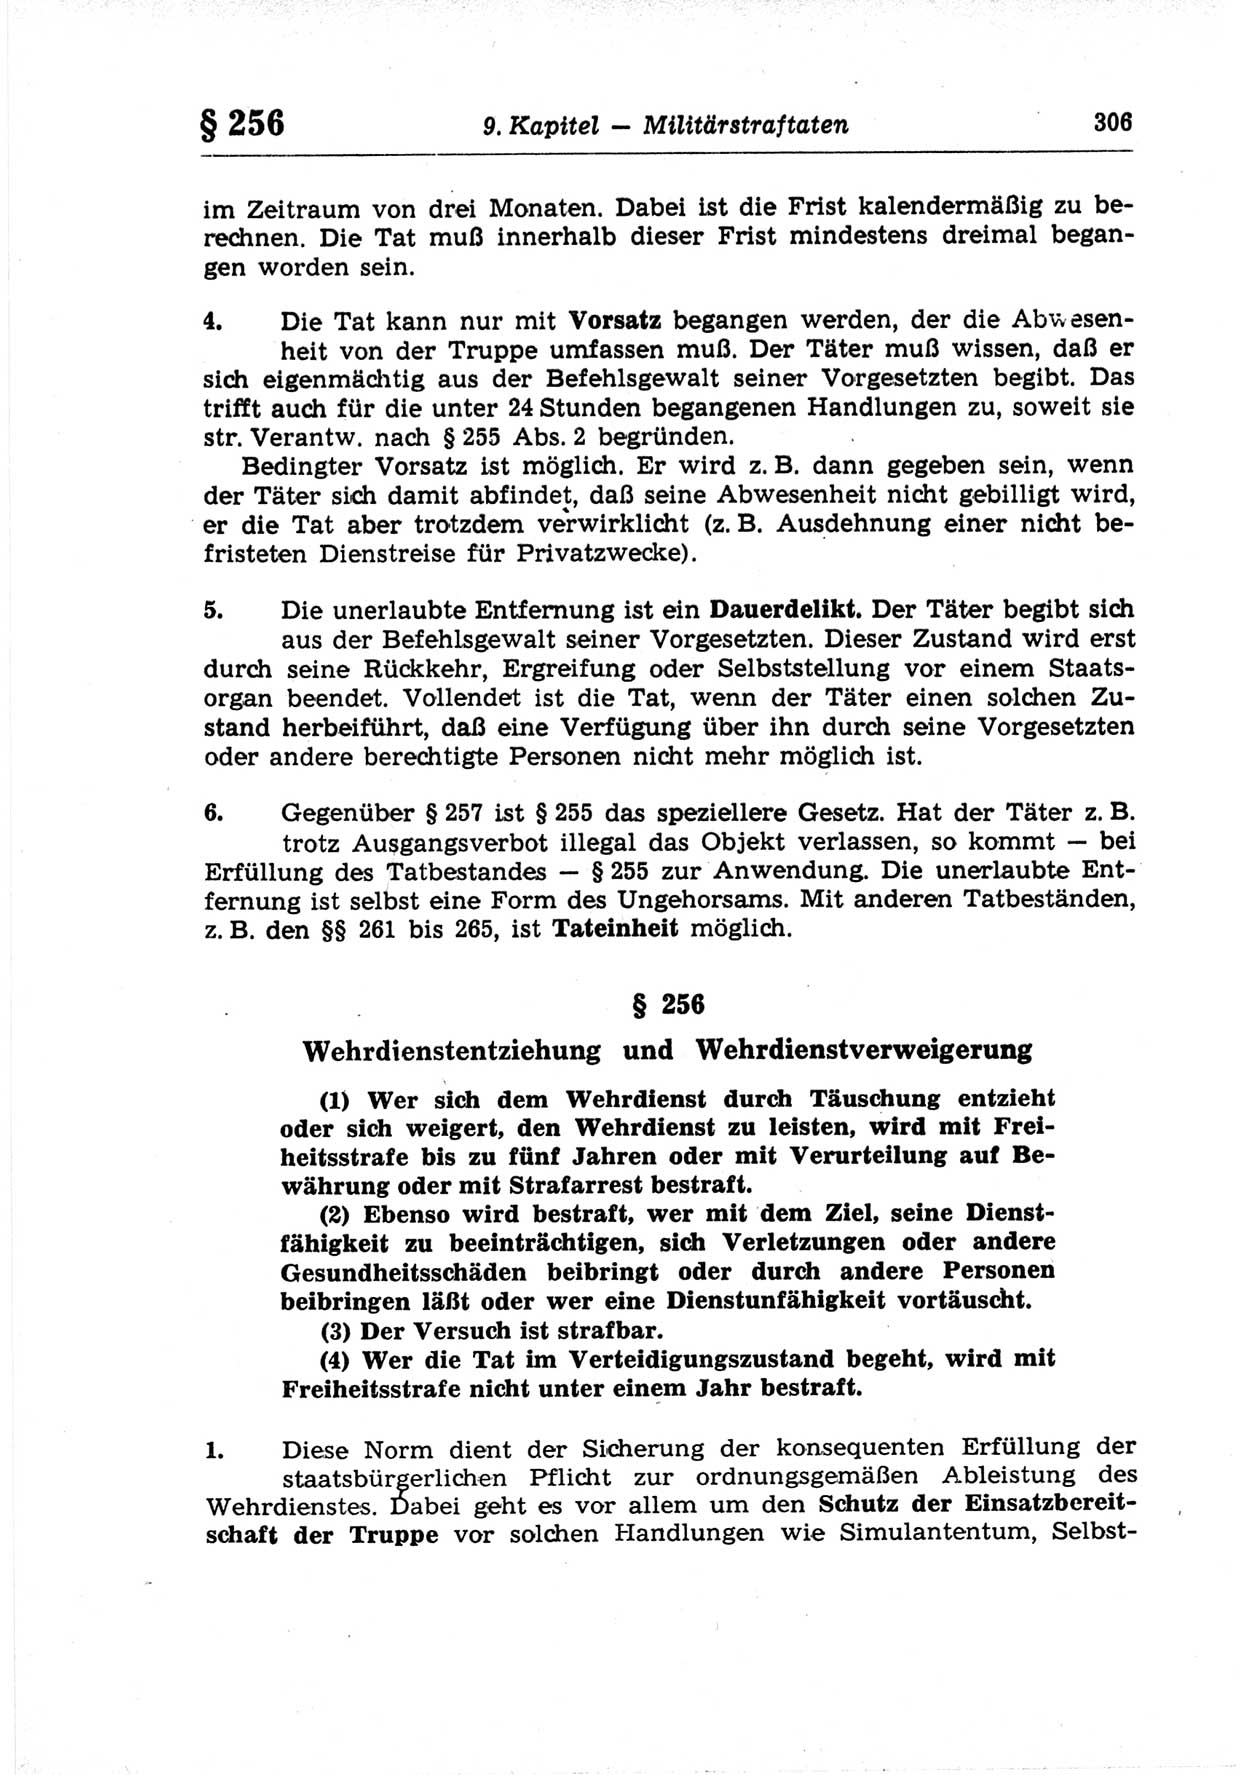 Strafrecht der Deutschen Demokratischen Republik (DDR), Lehrkommentar zum Strafgesetzbuch (StGB), Besonderer Teil 1969, Seite 306 (Strafr. DDR Lehrkomm. StGB BT 1969, S. 306)